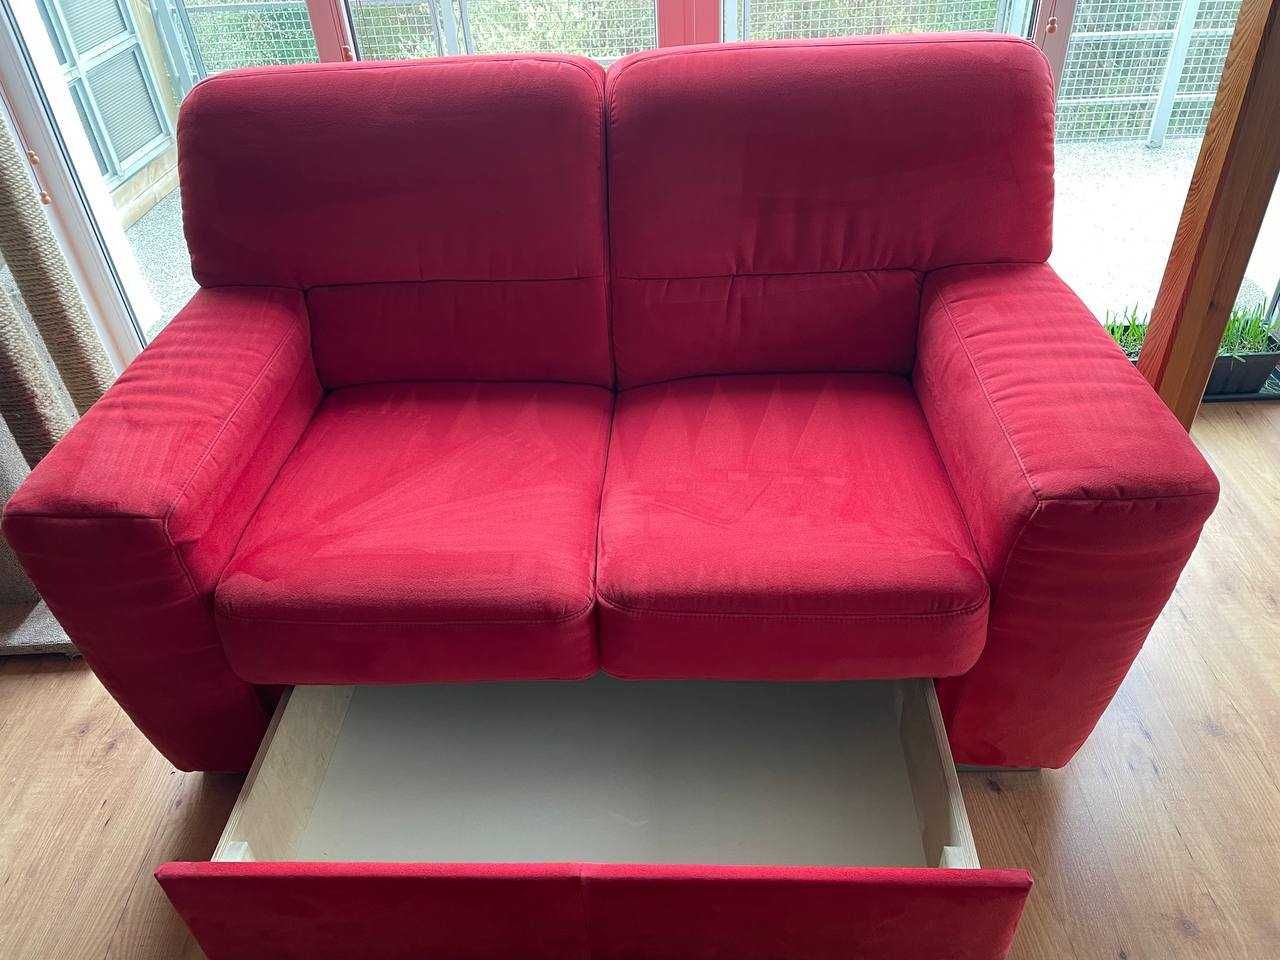 Sofa kanapa dwuosobowa czerwona z pojemnikiem